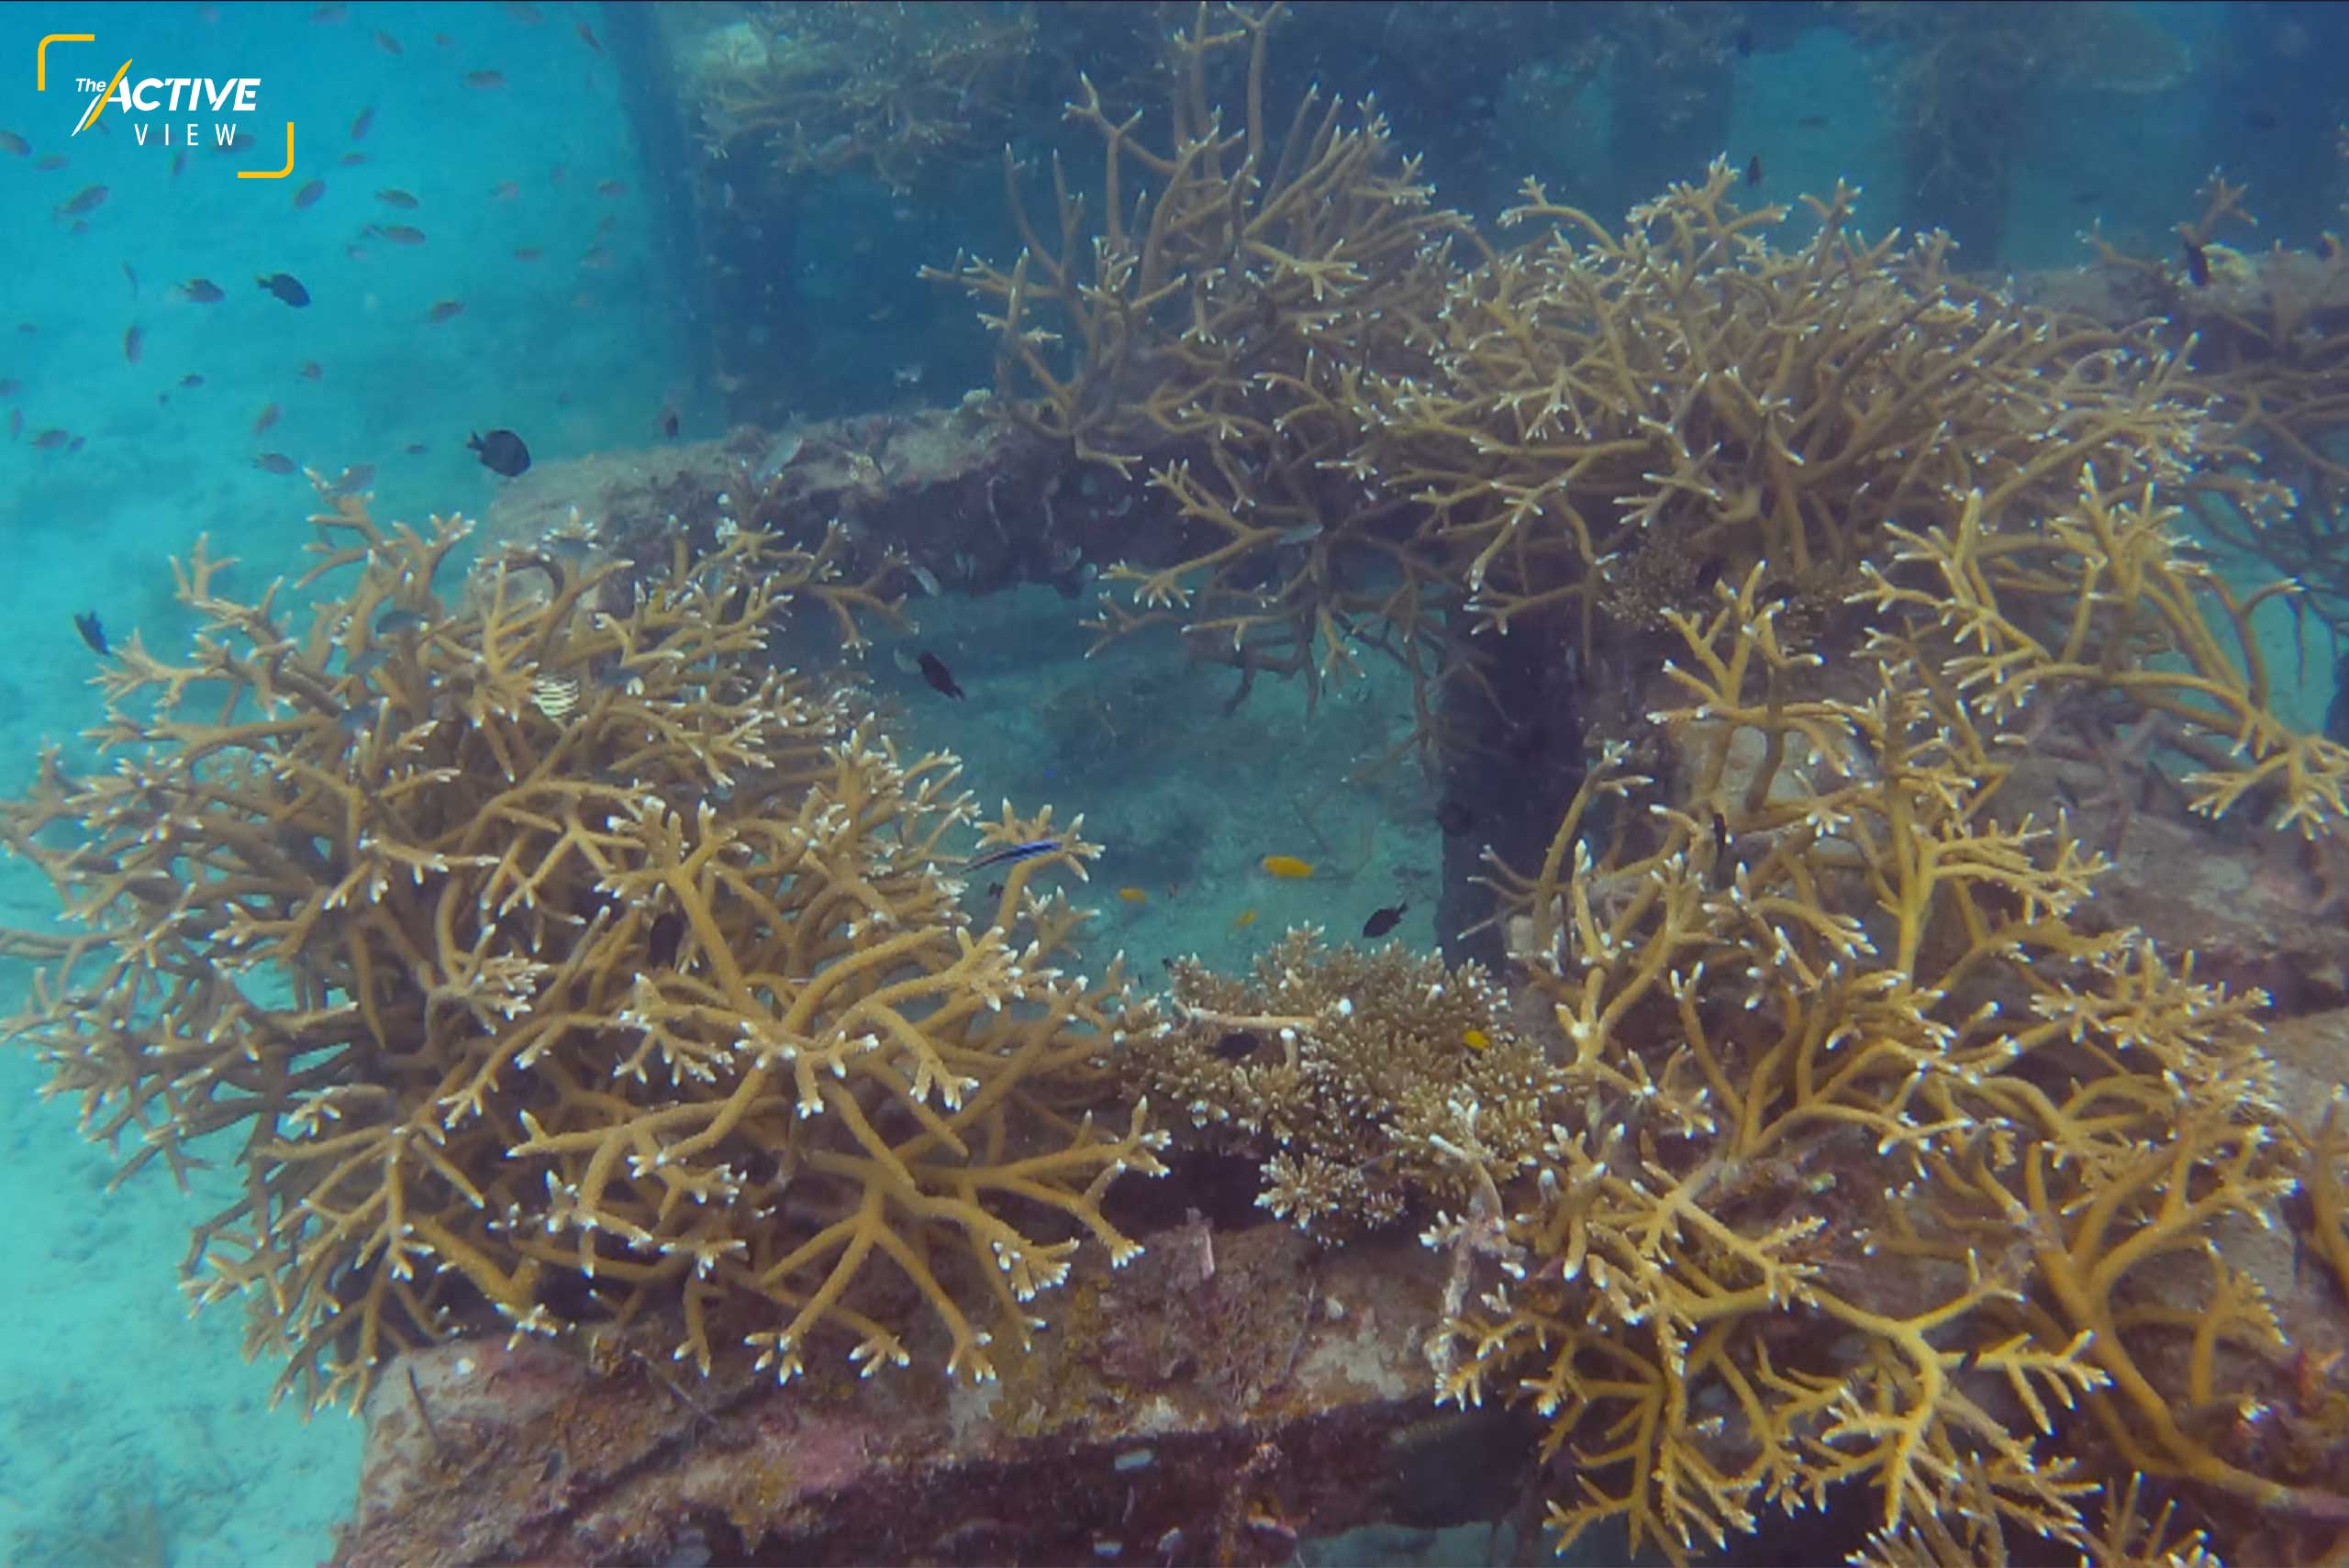 ปะการังเขากวาง ที่ถูกปลูกไว้ในแนวปะการังเทียม กำลังเติบโตและแตกกอมากขึ้น รอบเกาะเต่ามีแนวปะการังเทียมหลายจุด จากโครงการอนุรักษ์ทางทะเล เพื่อลดภาระแหล่งดำน้ำธรรมชาติ